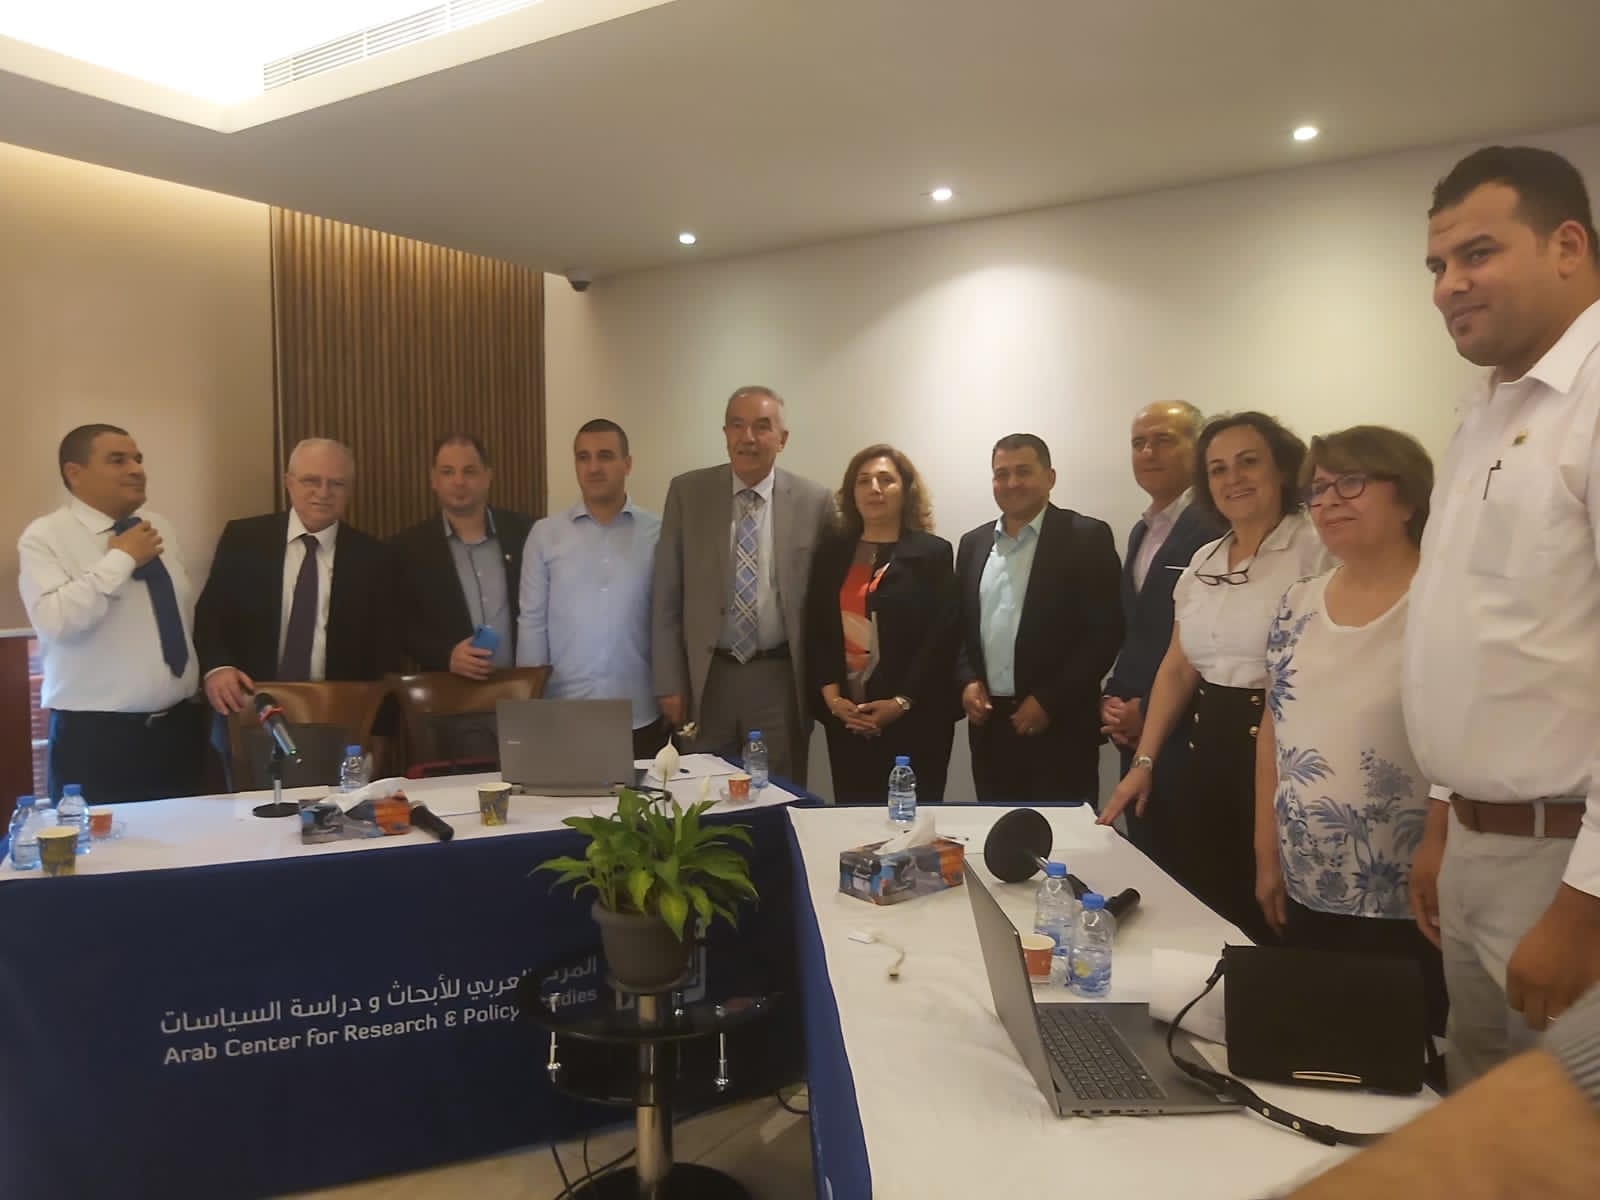 الجمعية اللبنانية لعلم الاجتماع نظّمت نشاطًا علميًّا تفاعليًّا لاستكشاف وضع العلوم الاجتماعية في الجزائر ولبنان